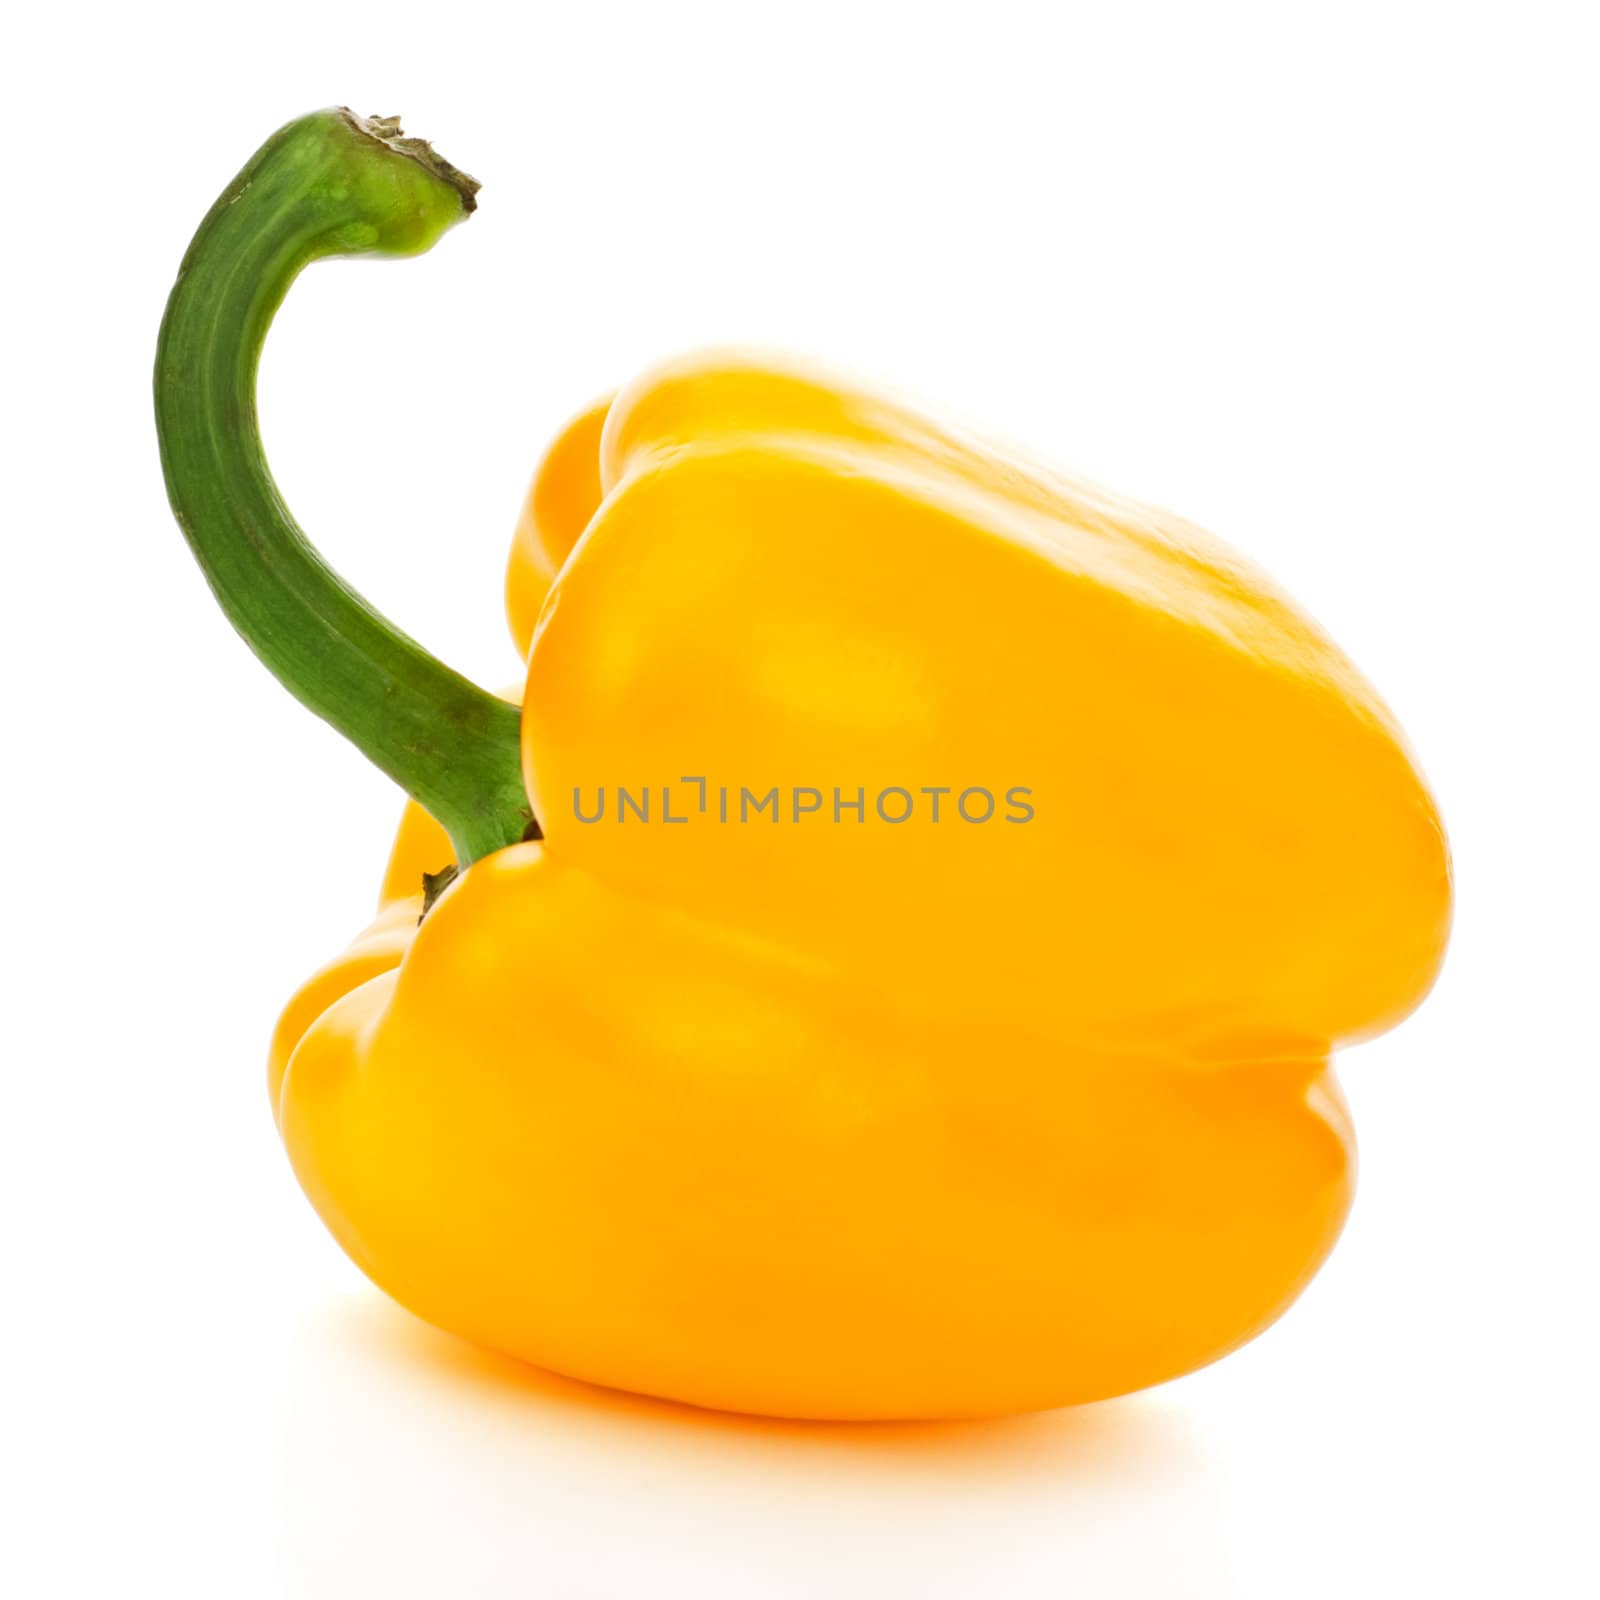 fresh yellow paprika isolated on white background